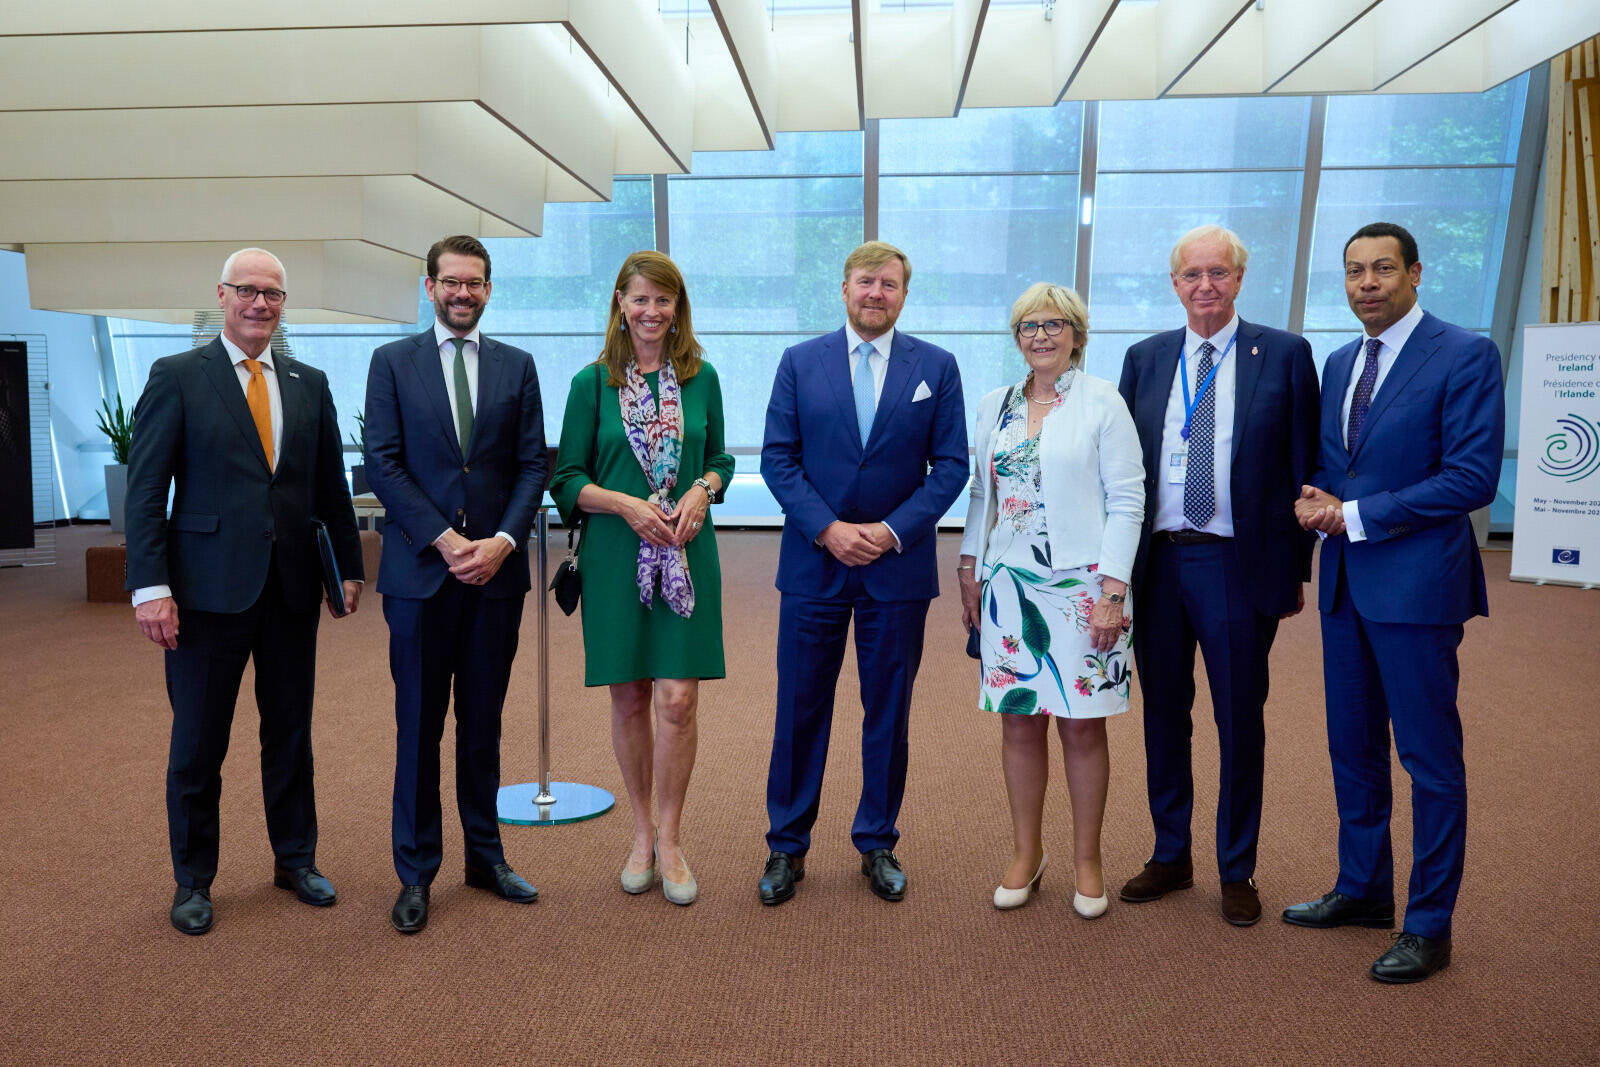 Voor de Nederlandse delegatie stond de toespraak van Koning Willem-Alexander in de hémicycle op donderdag 23 juni centraal, inclusief zijn ontmoeting met de delegatie en het debat over de verantwoordingsplicht voor het neerhalen van vlucht MH17.